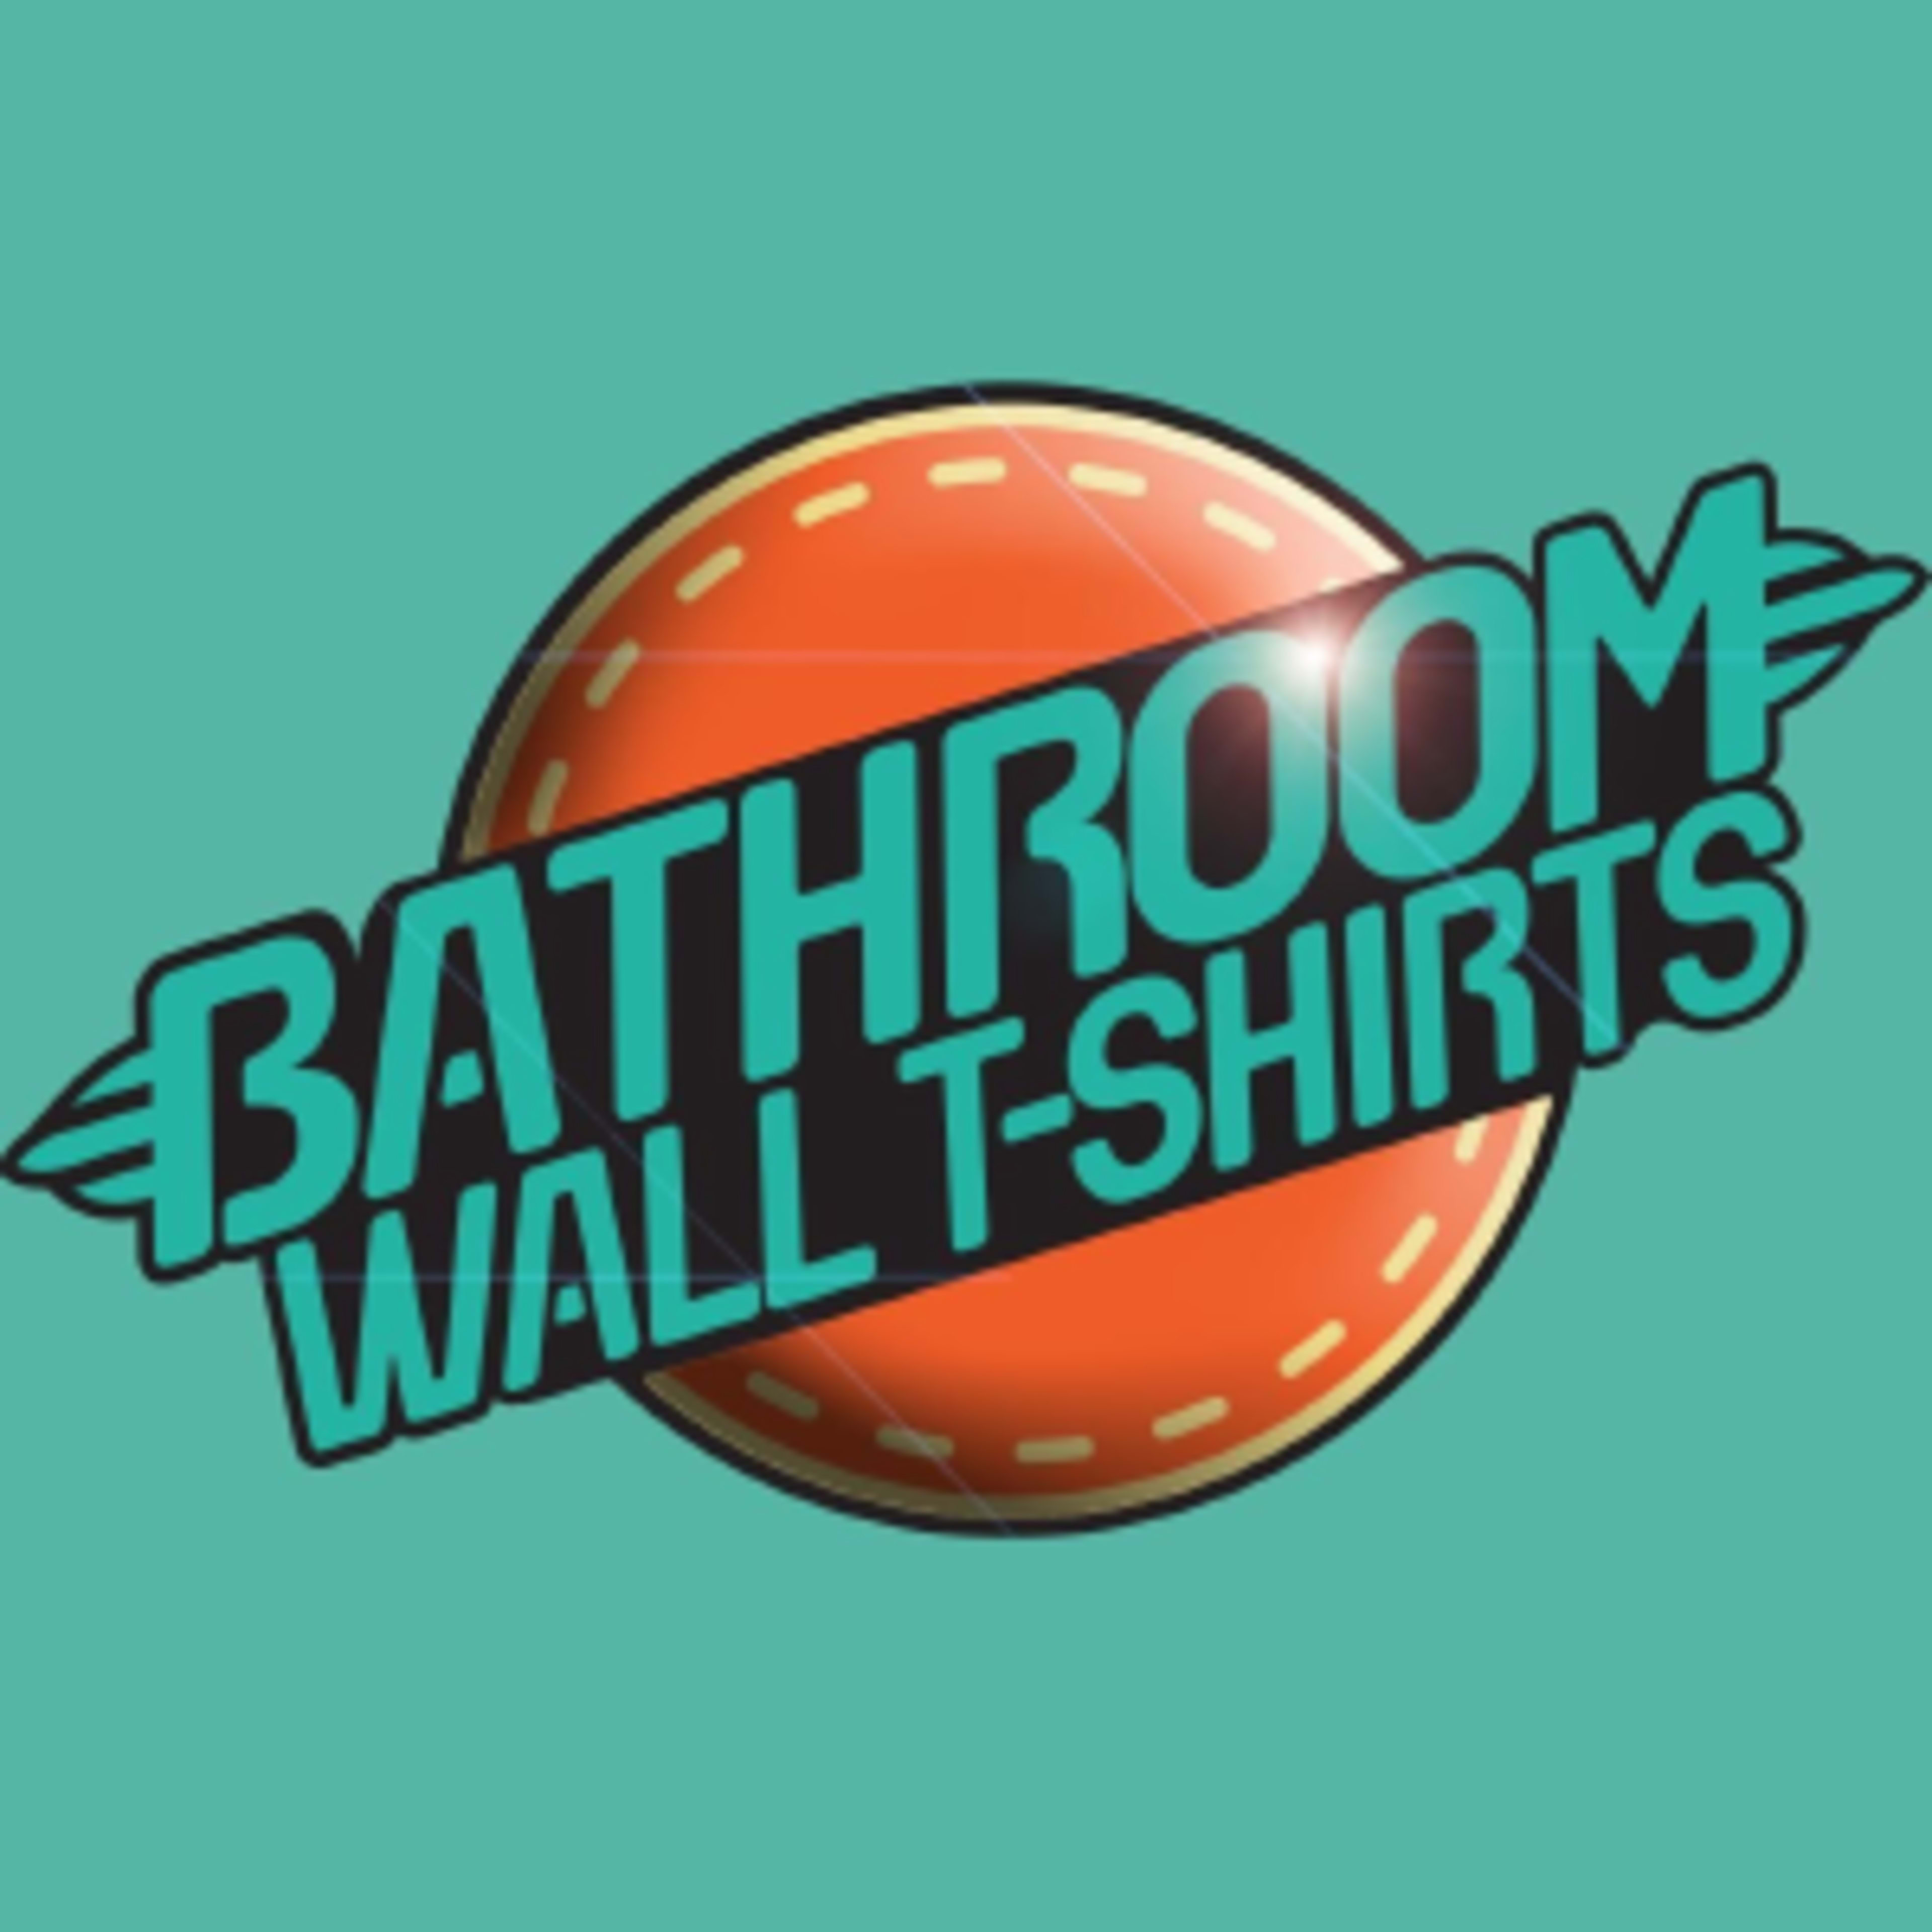 BathRoom Wall Tshirts Code